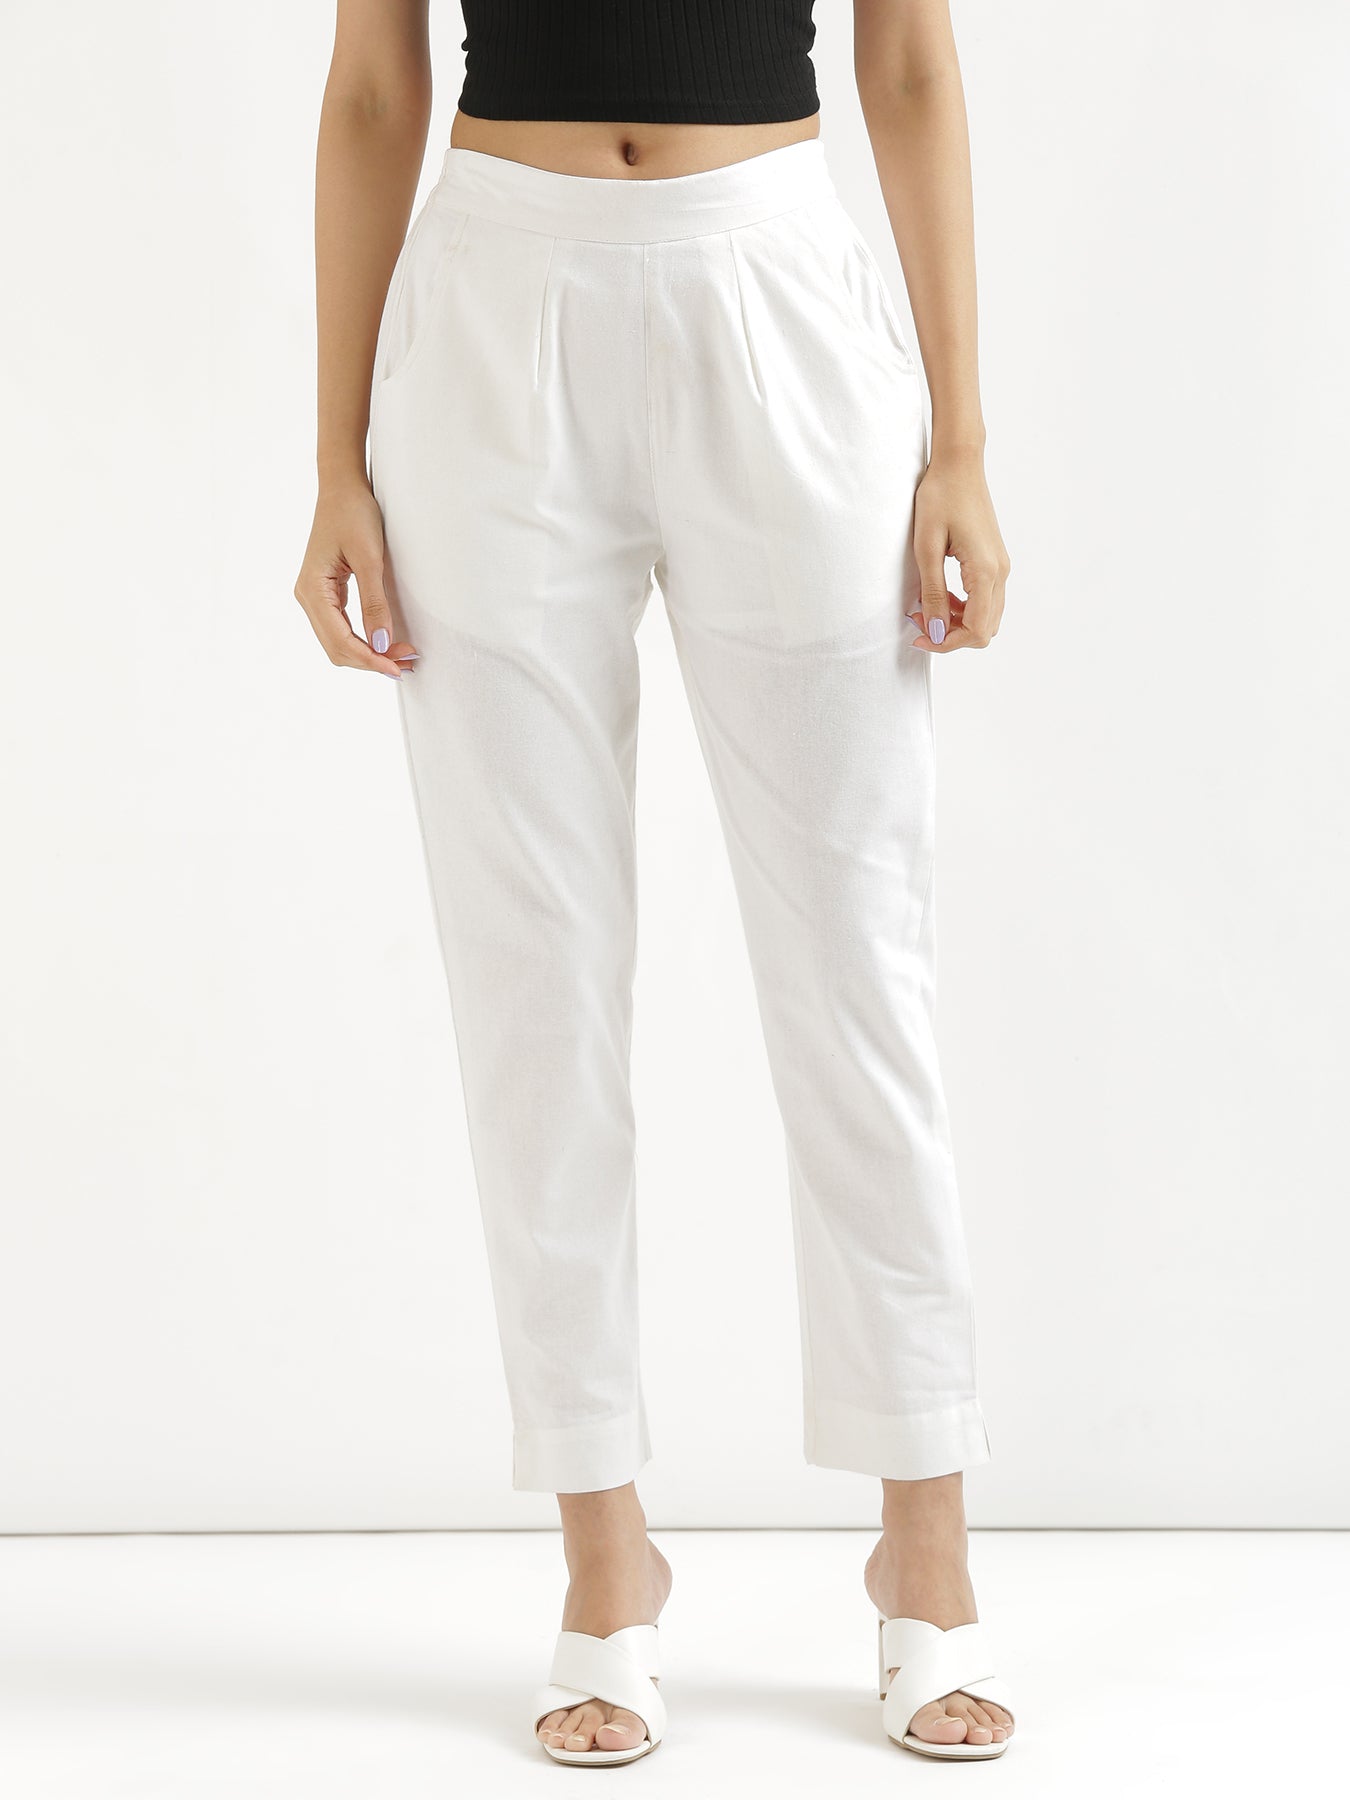 Buy Women's Cotton Elastane Casual Wear Regular Fit Kpants|Cottonworld